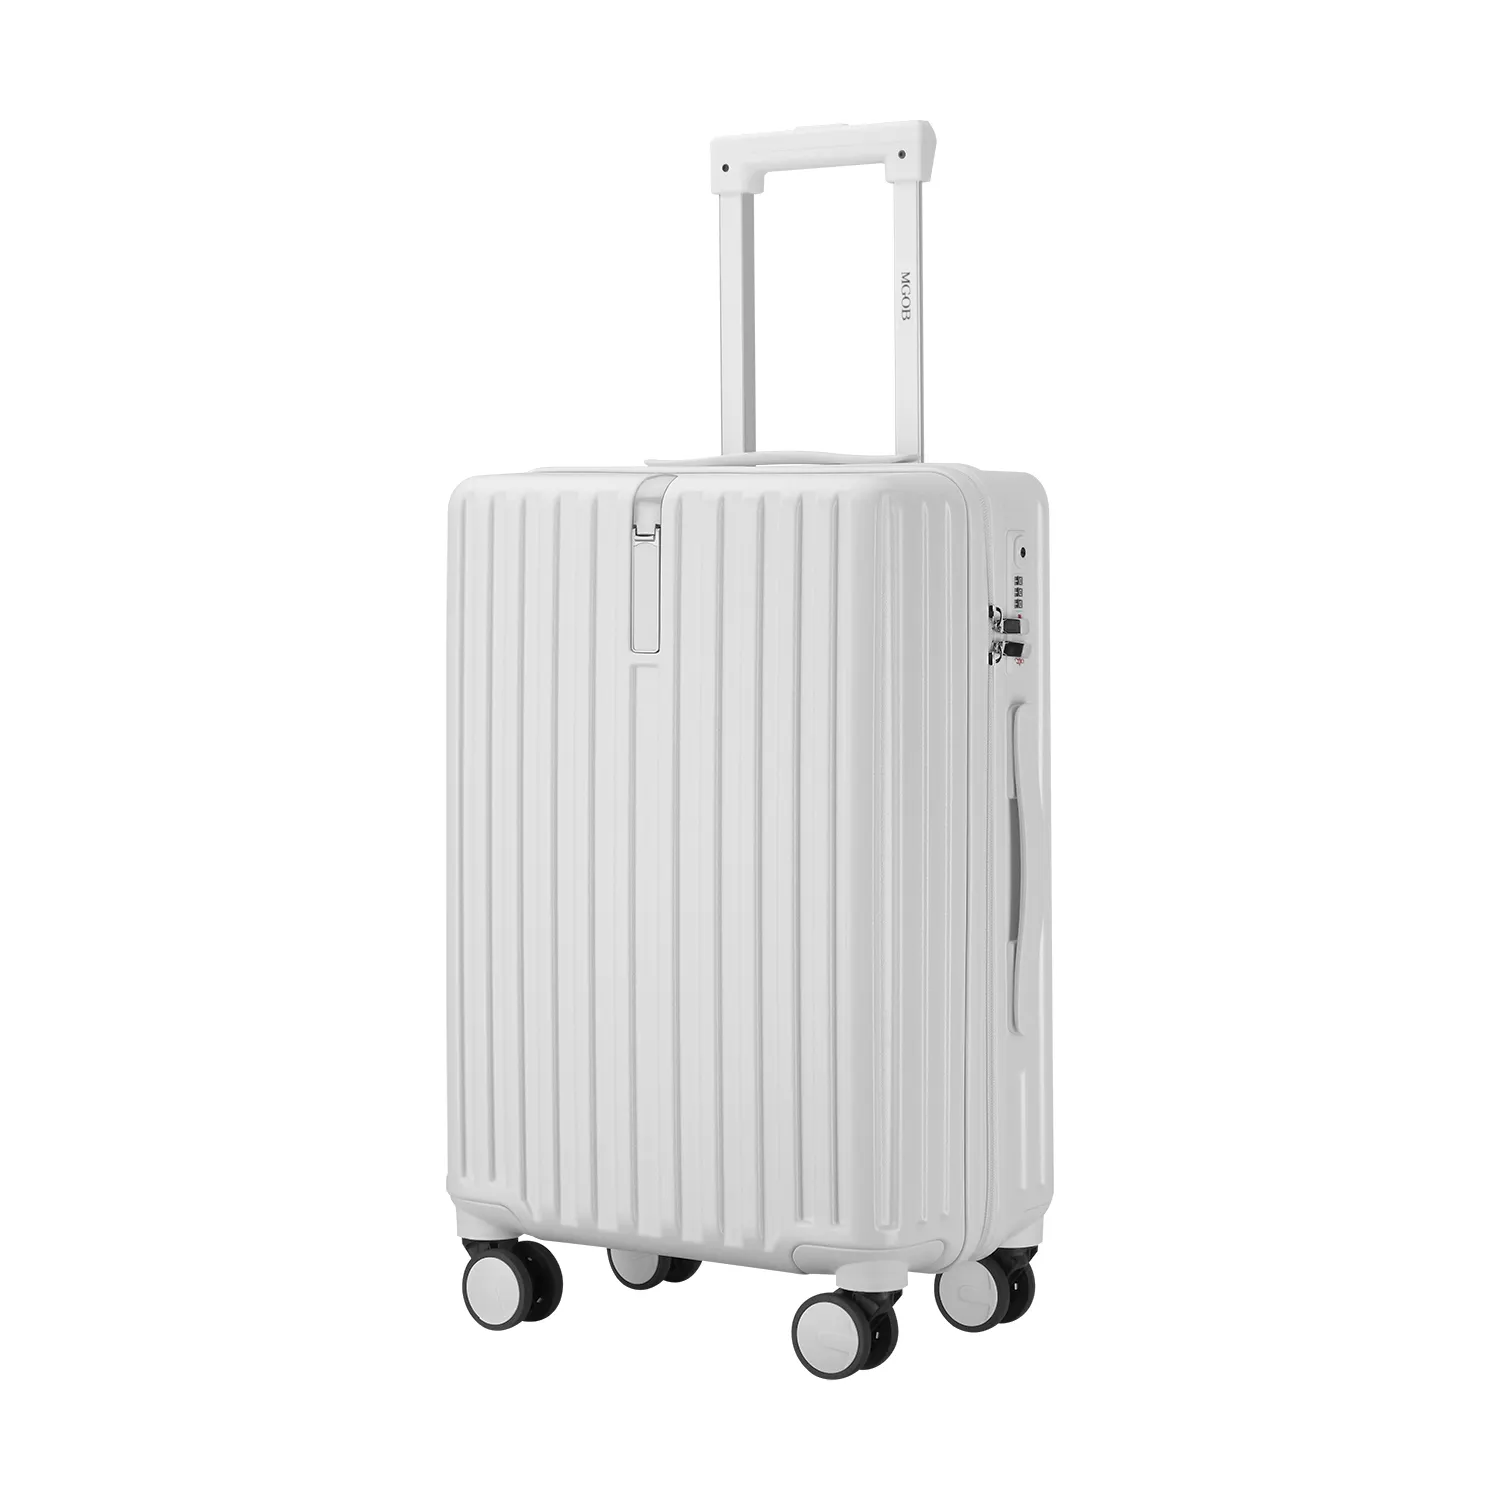 Nhà thiết kế mới PC du lịch túi xe đẩy koffer mang theo trên tay hành lý vali 20 inch Xe đẩy vali nơi tốt nhất để mua hành lý